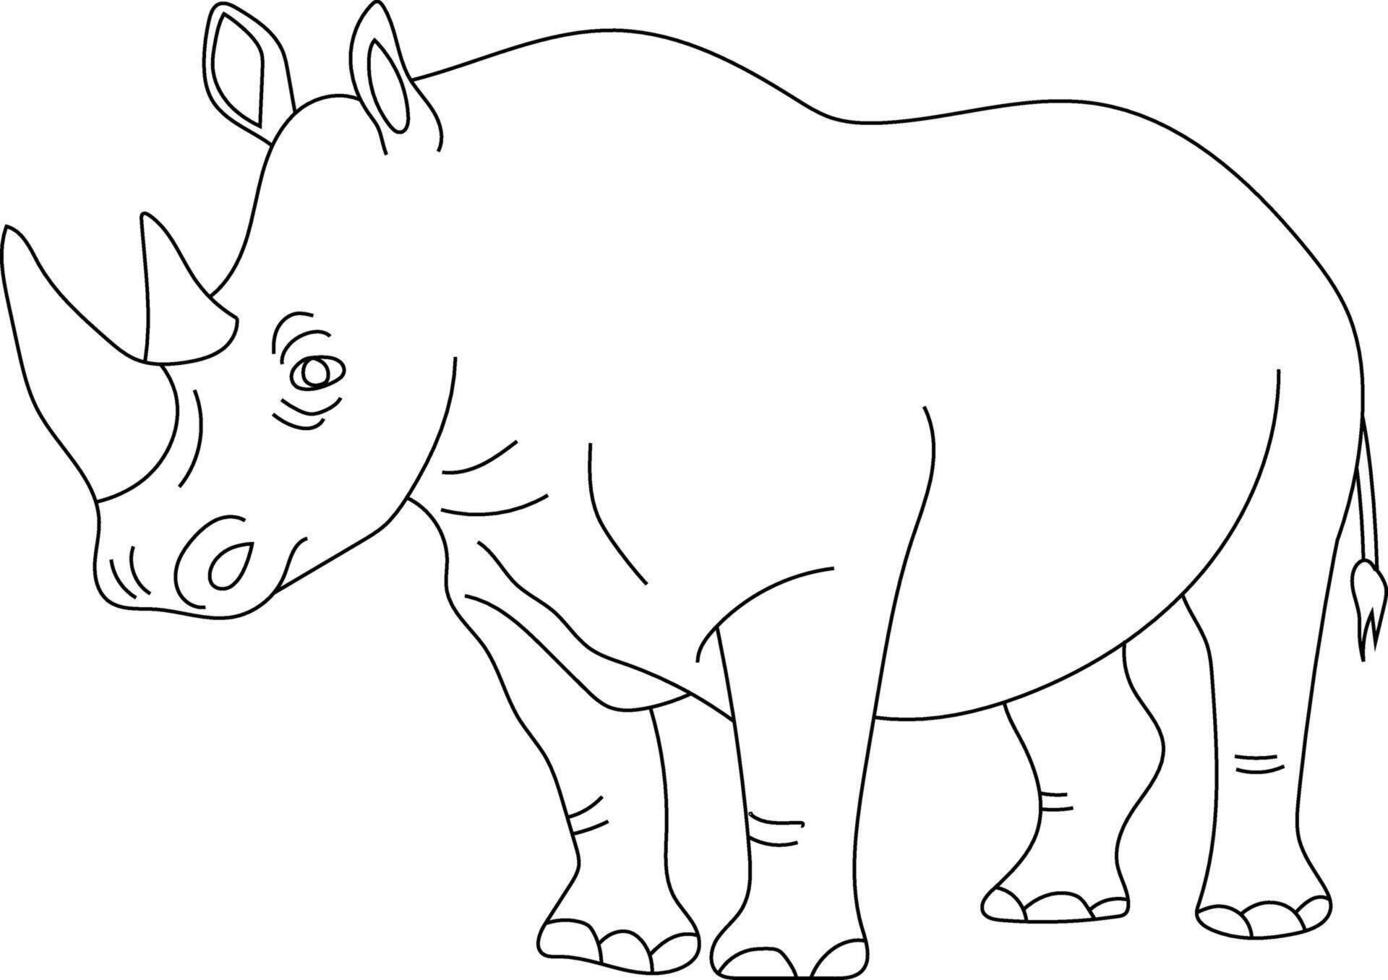 schets neushoorn clip art. tekening dieren clip art. tekenfilm wild dieren clip art voor geliefden van dieren in het wild vector